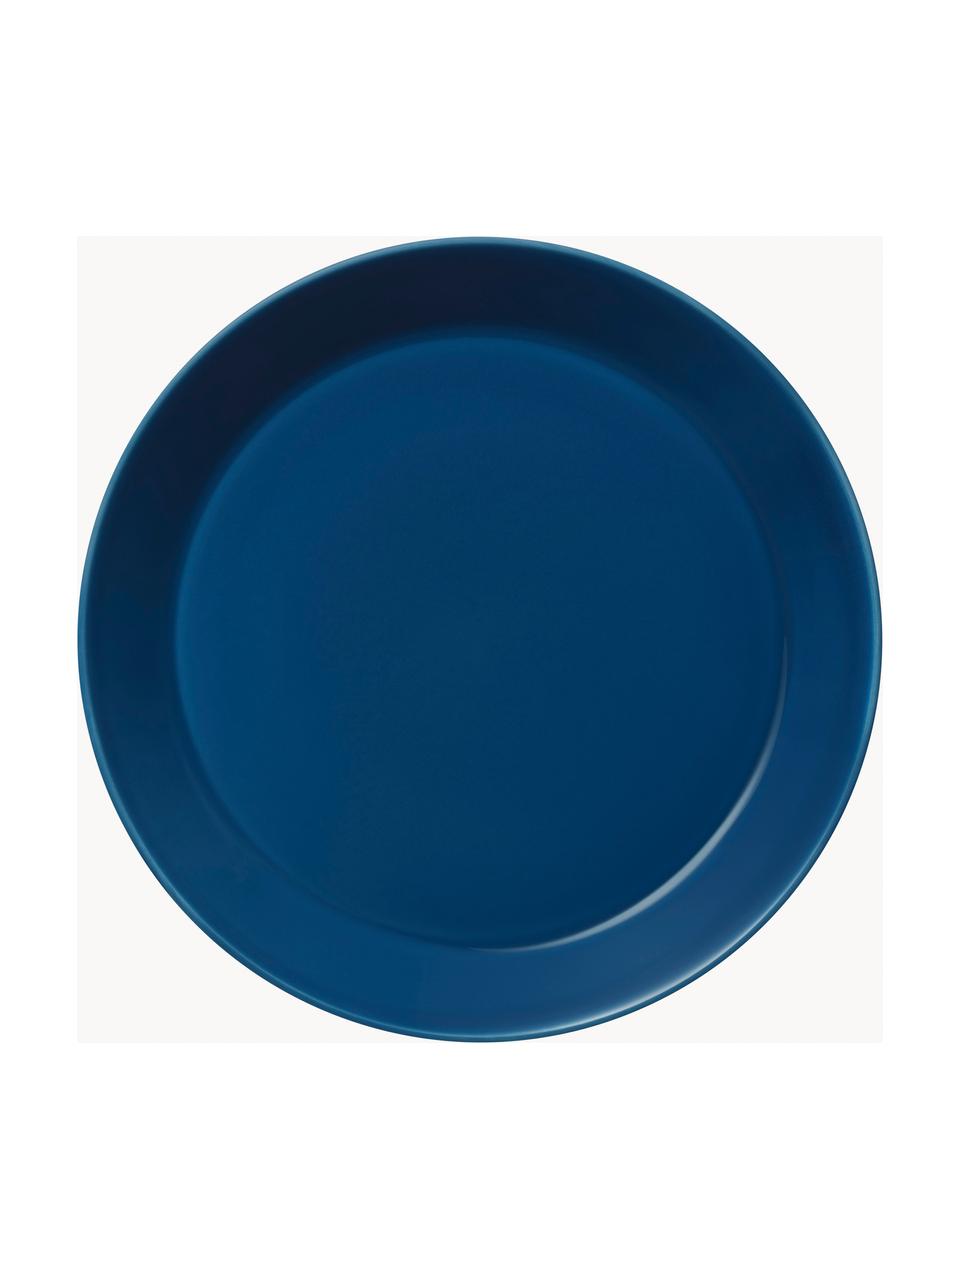 Piatto piano in porcellana Teema, Porcellana vitro, Blu scuro, Ø 26 cm